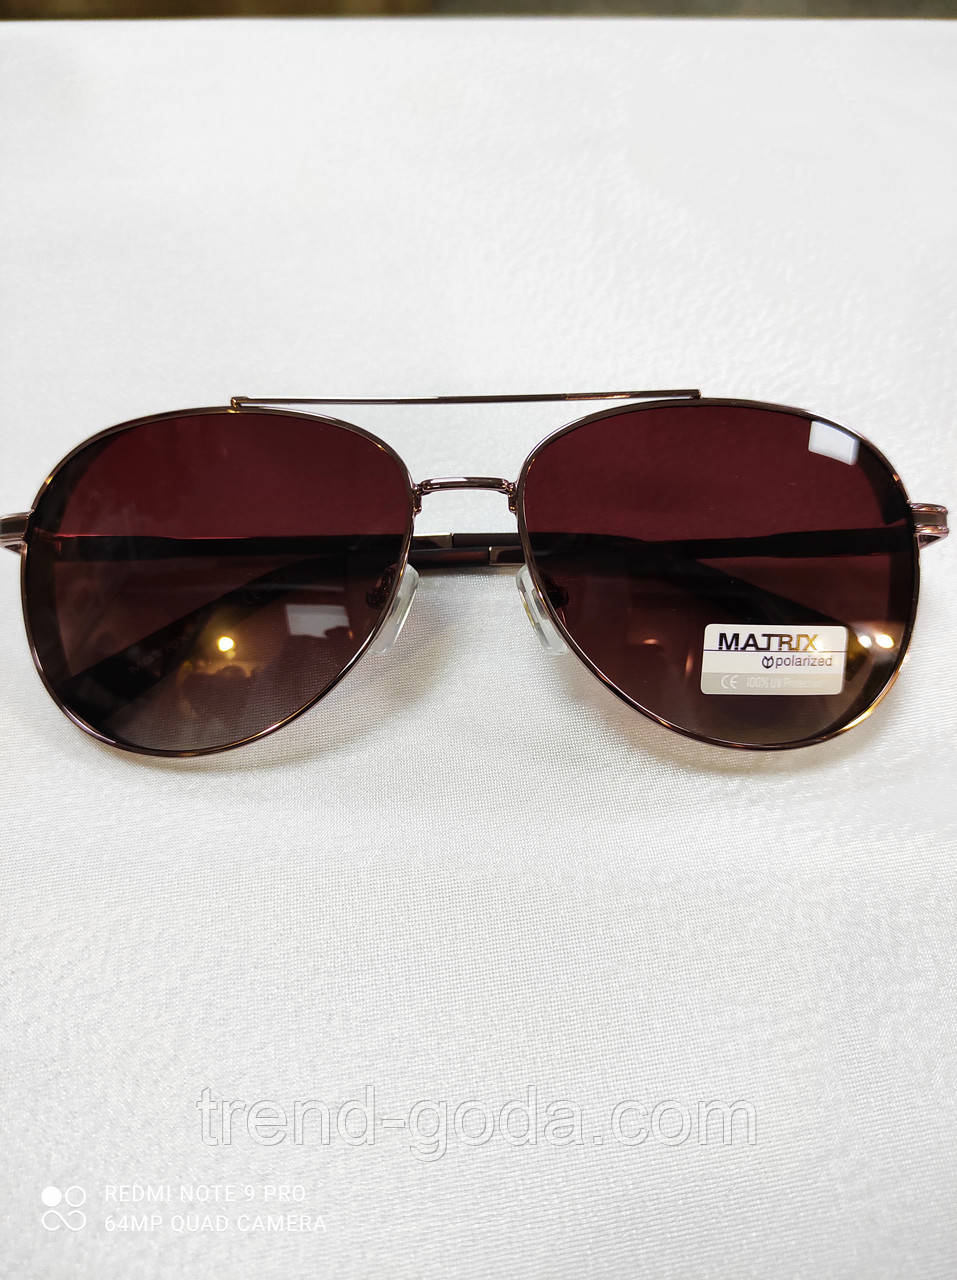 Чоловічі сонцезахисні окуляри Aviator Matrix Polarized Сонцезахисні поляризаційні стильні чоловічі окуляри